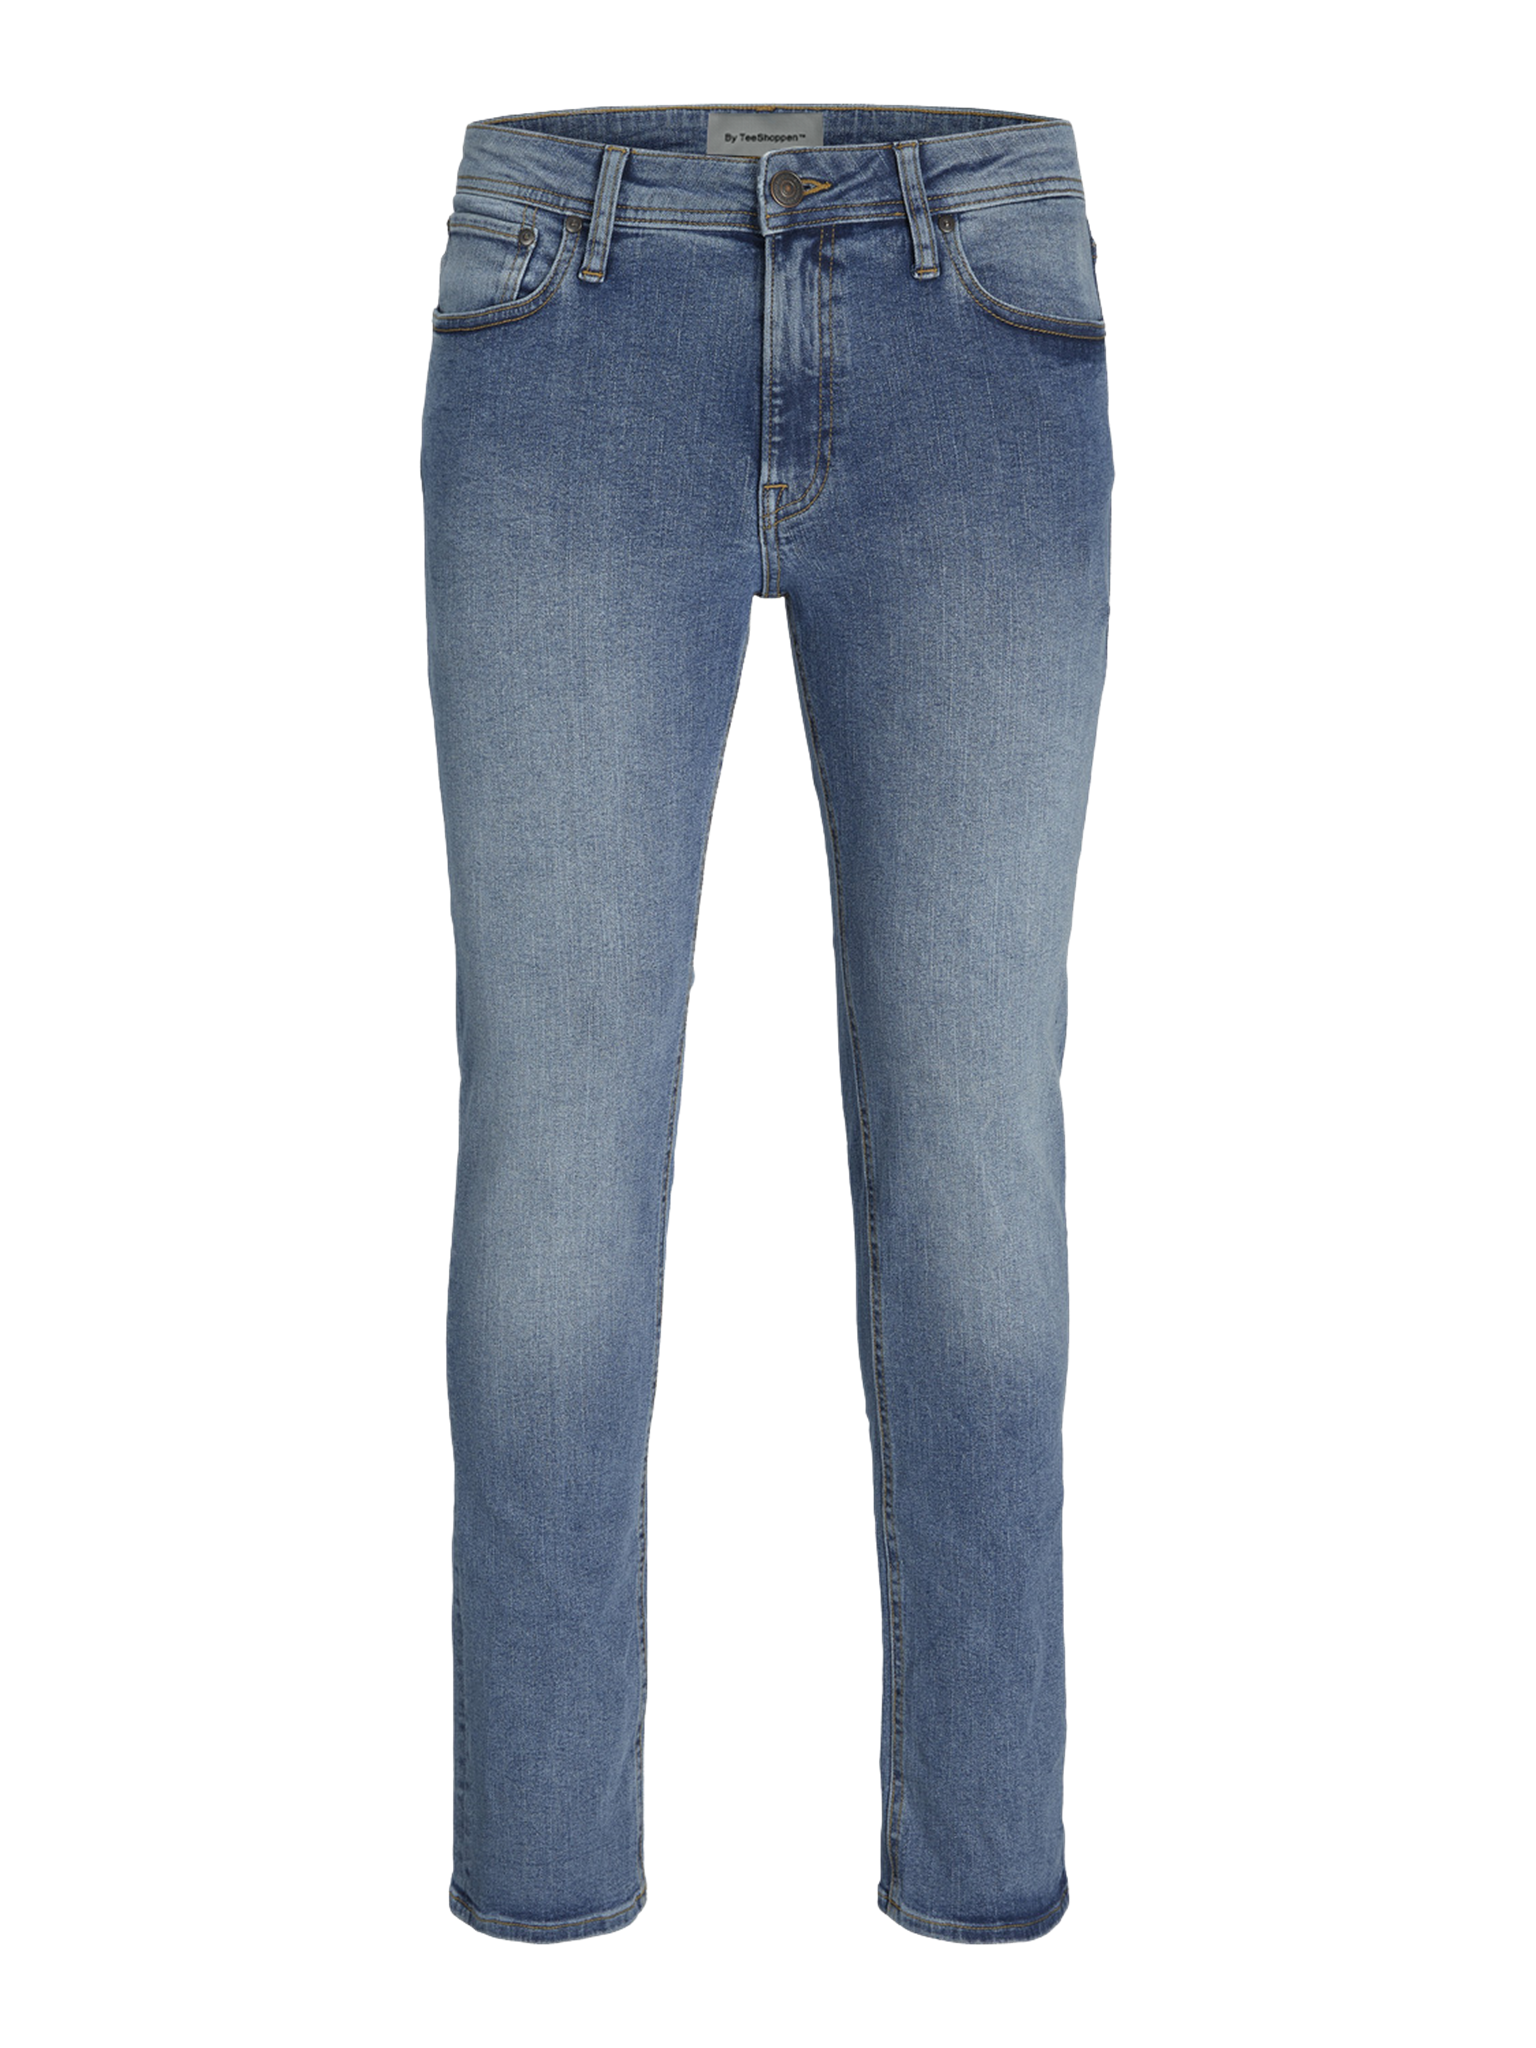 12224336-comfort-jeans-na032-lbd-front.png?v=1664794015